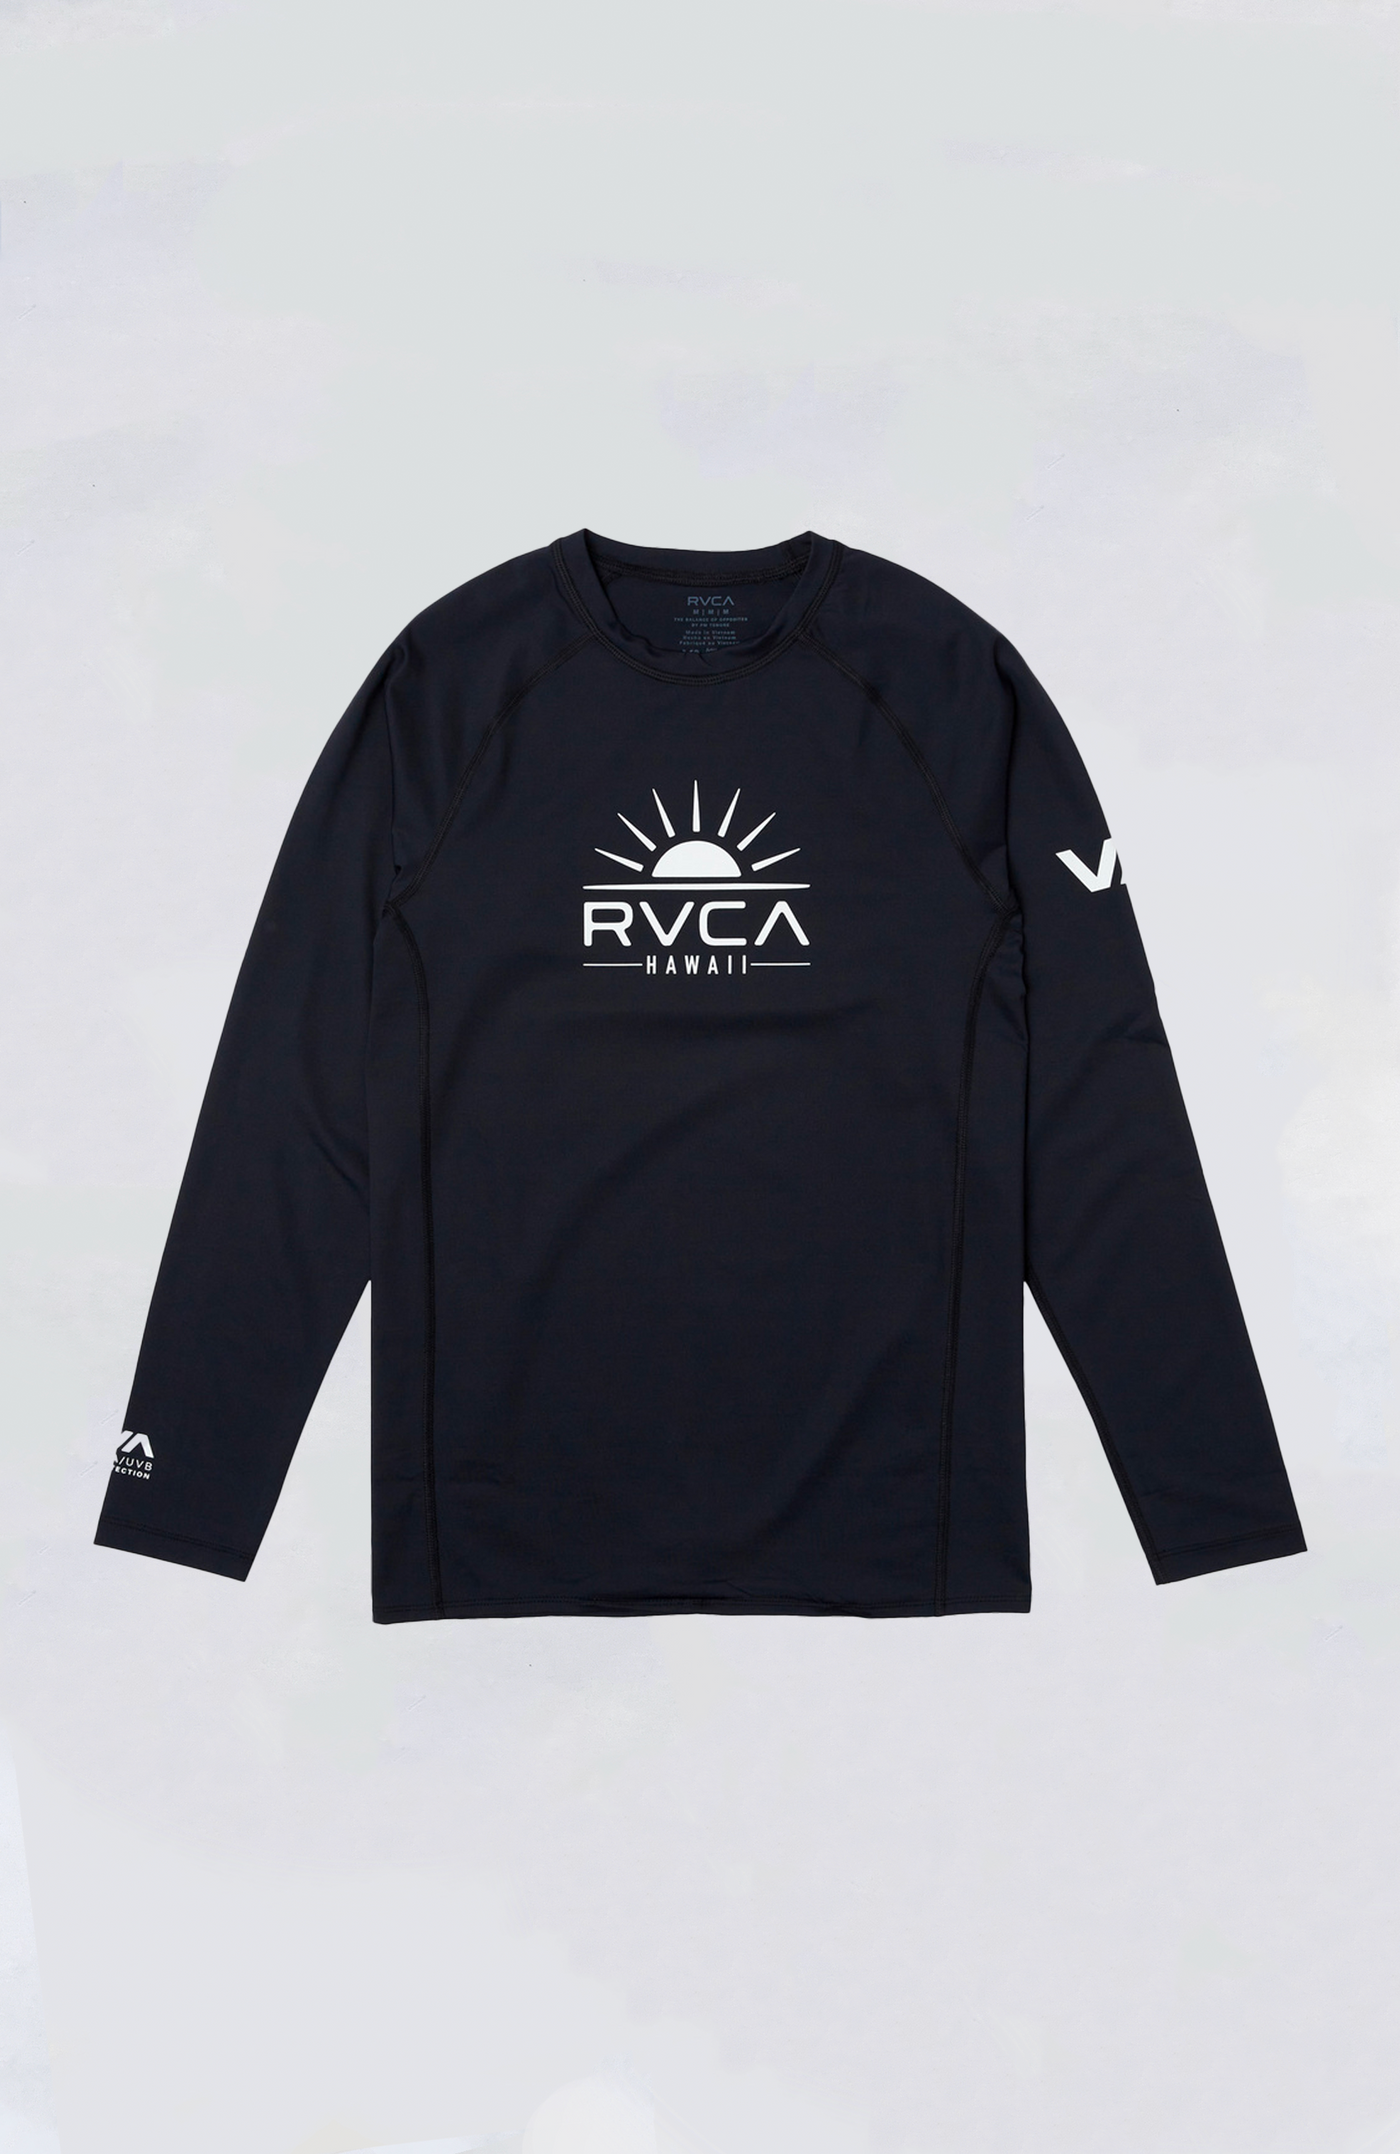 RVCA Surf Shirt - Sunny Hawaii LS Rashguard